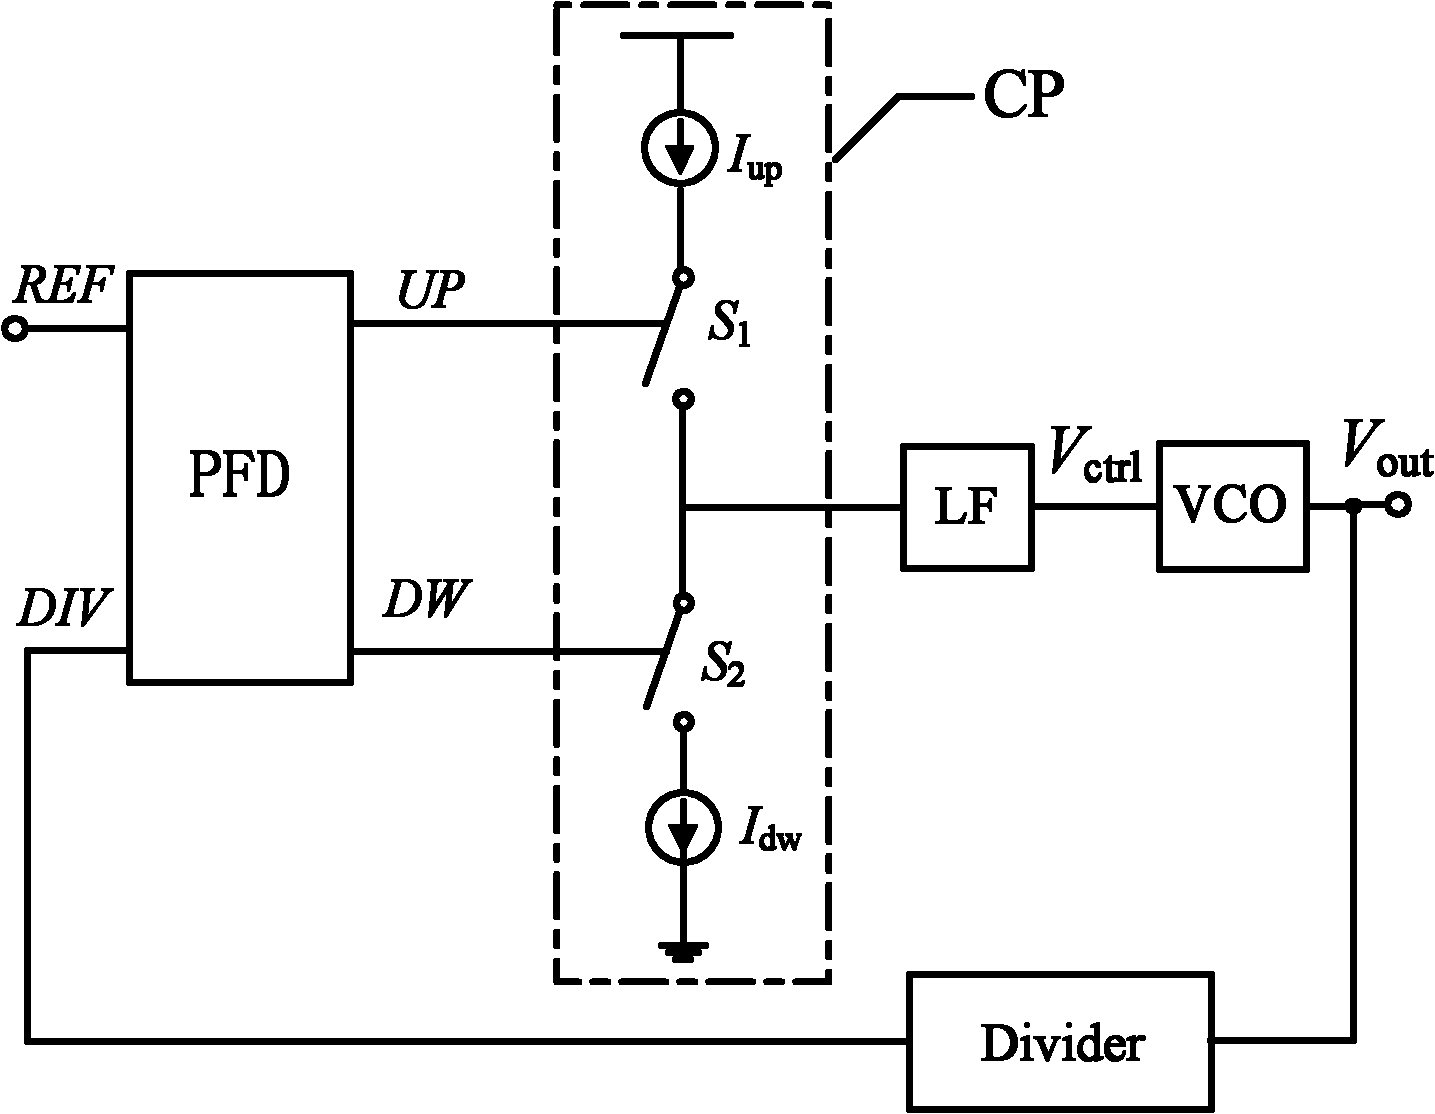 Charge pump circuit in charge pump phase-locking loop